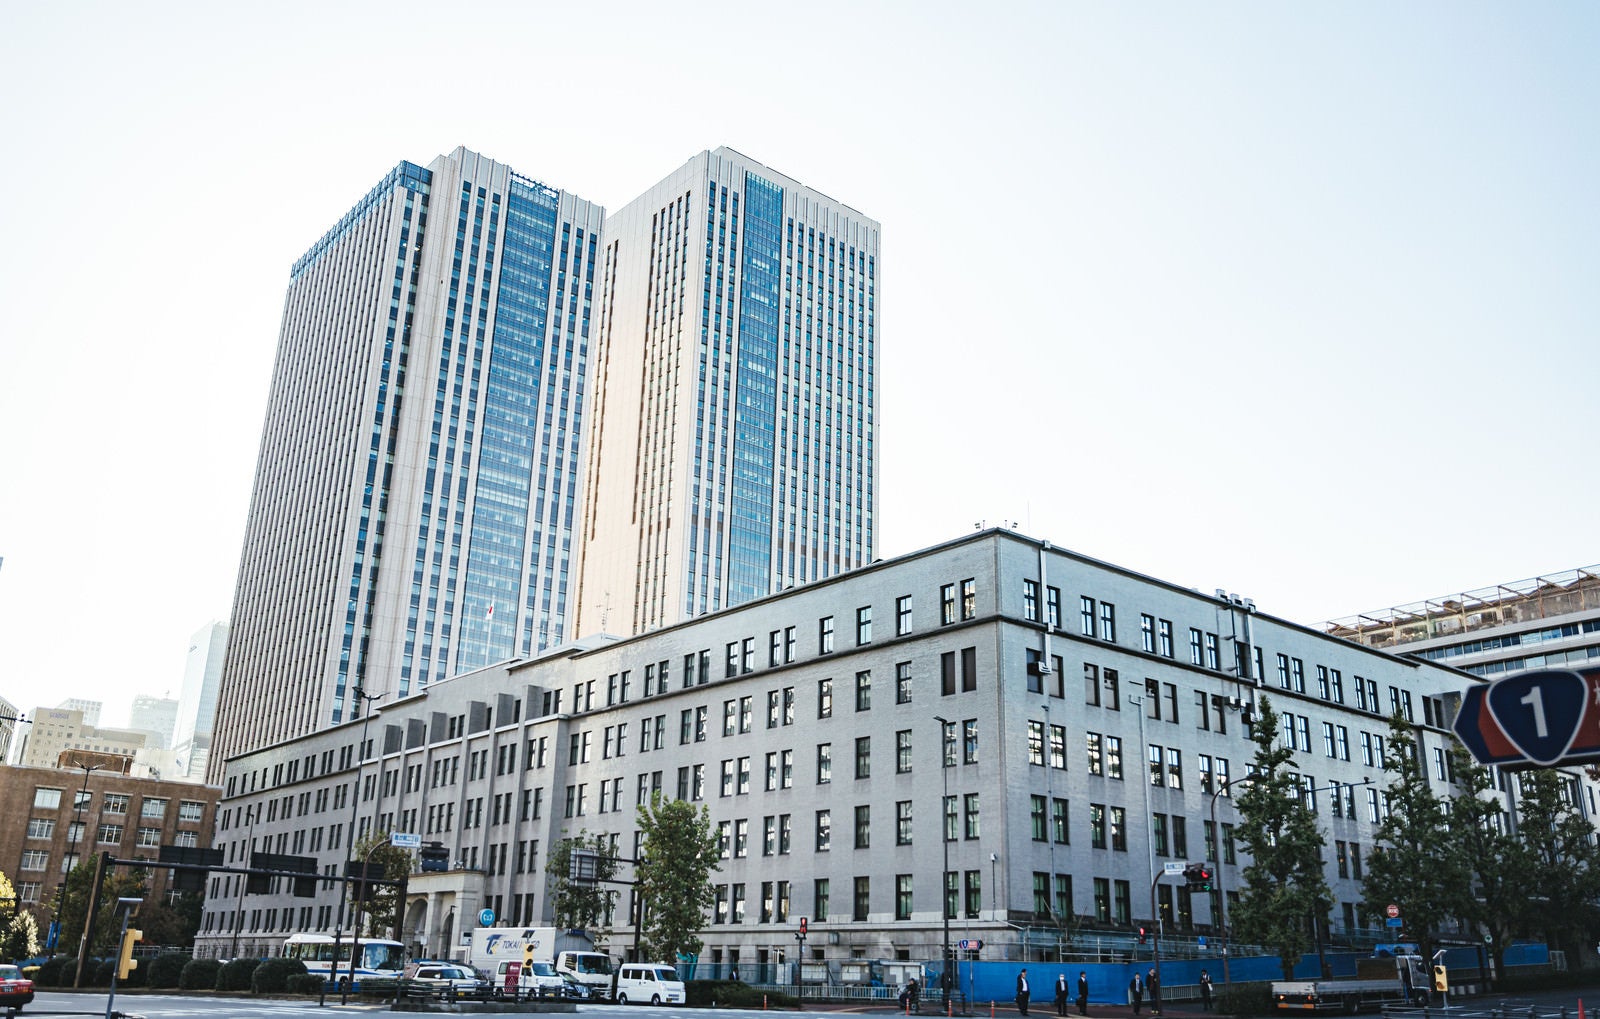 「財務省と国税庁の建物」の写真